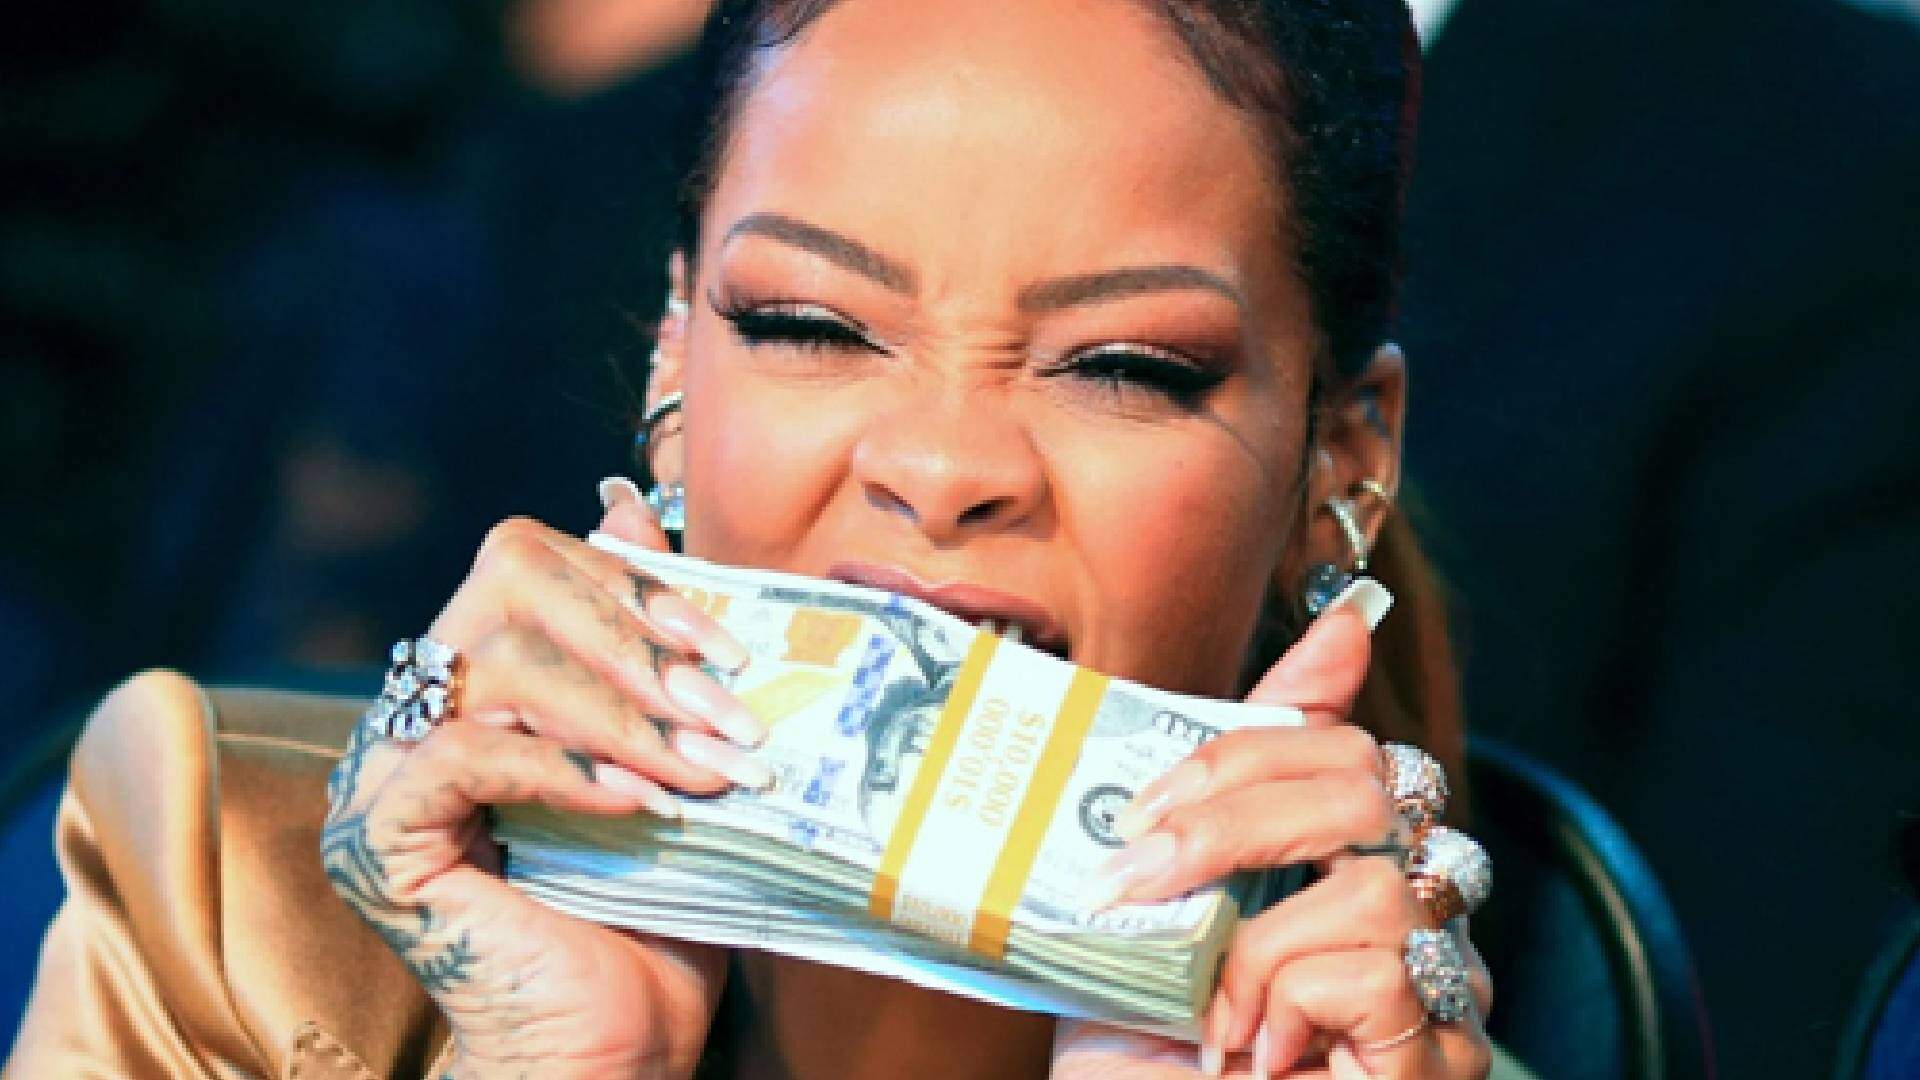 Forbes revela valor da fortuna de Rihanna e choca fãs da cantora: “Rica!” - Metropolitana FM